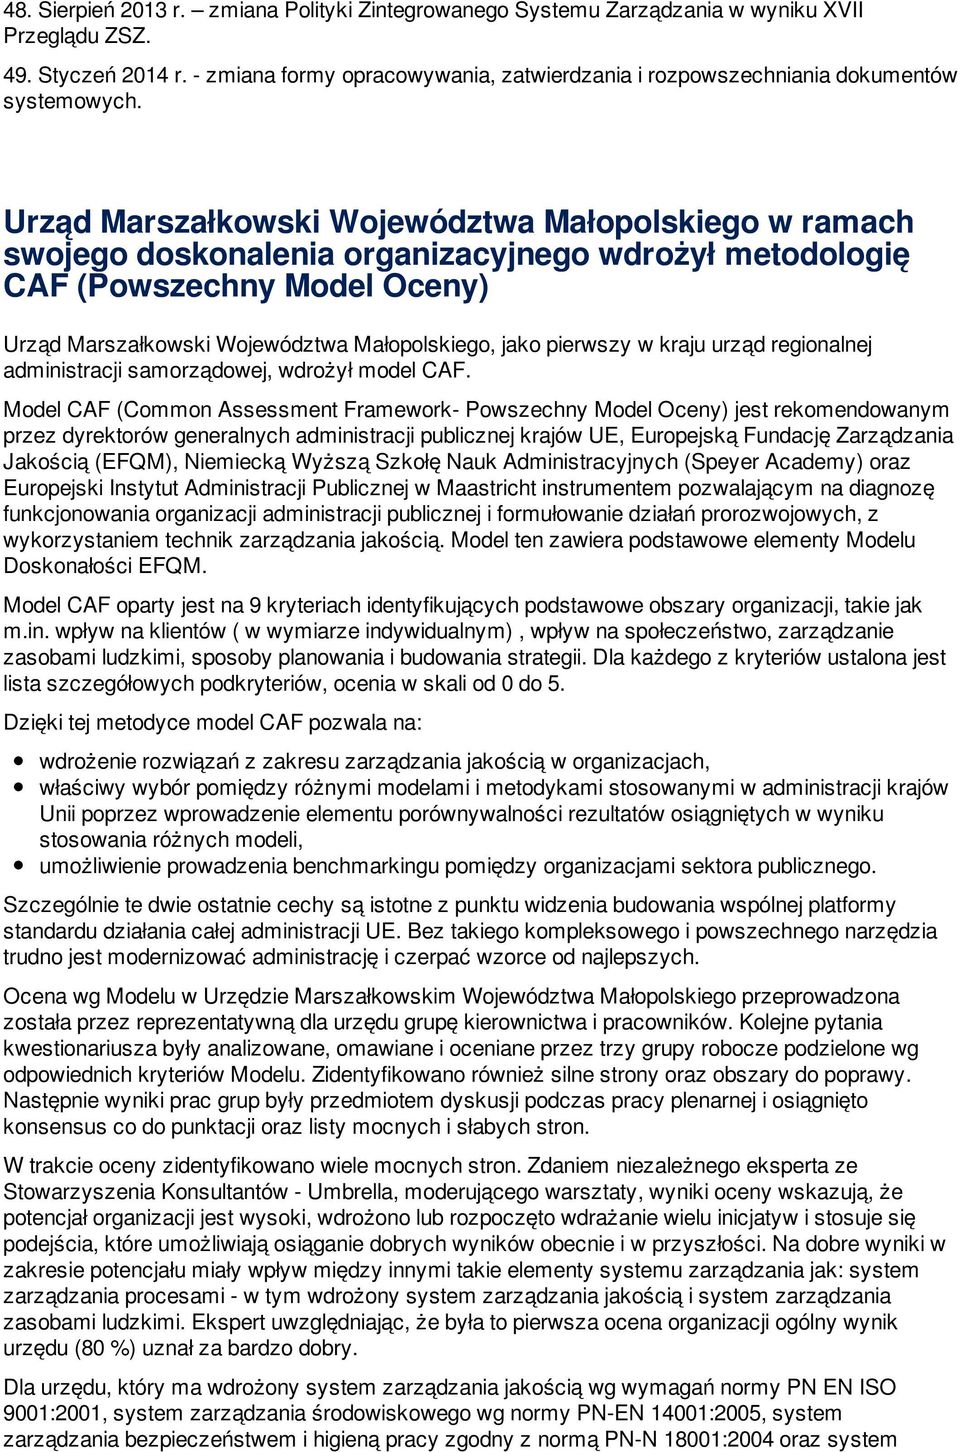 Urząd Marszałkowski Województwa Małopolskiego w ramach swojego doskonalenia organizacyjnego wdrożył metodologię CAF (Powszechny Model Oceny) Urząd Marszałkowski Województwa Małopolskiego, jako